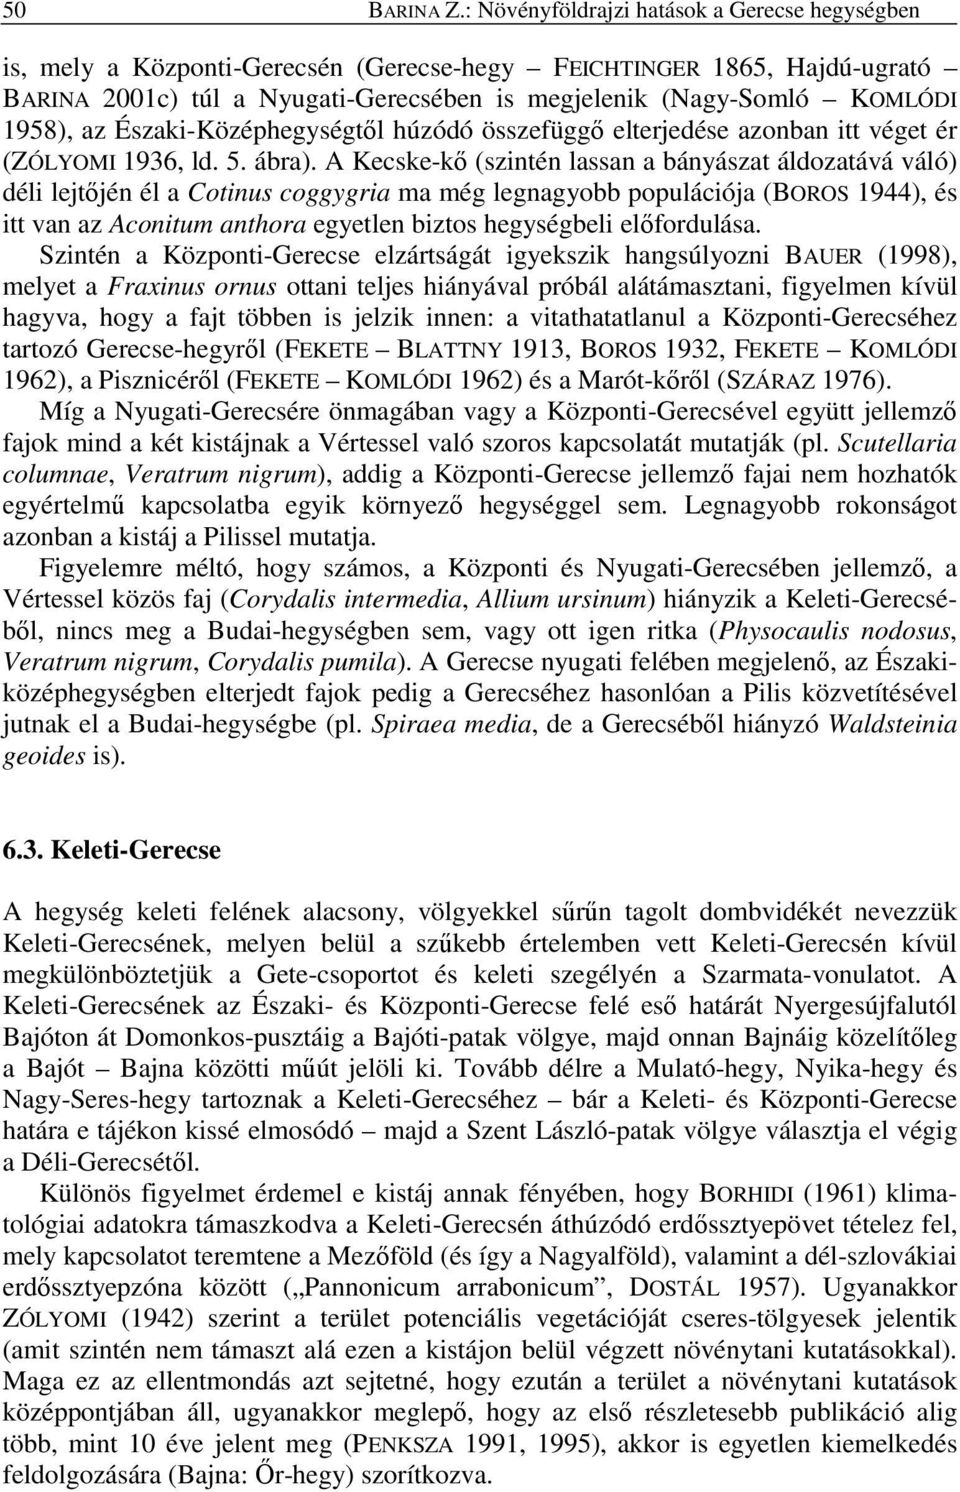 1958), az Északi-Középhegységtıl húzódó összefüggı elterjedése azonban itt véget ér (ZÓLYOMI 1936, ld. 5. ábra).